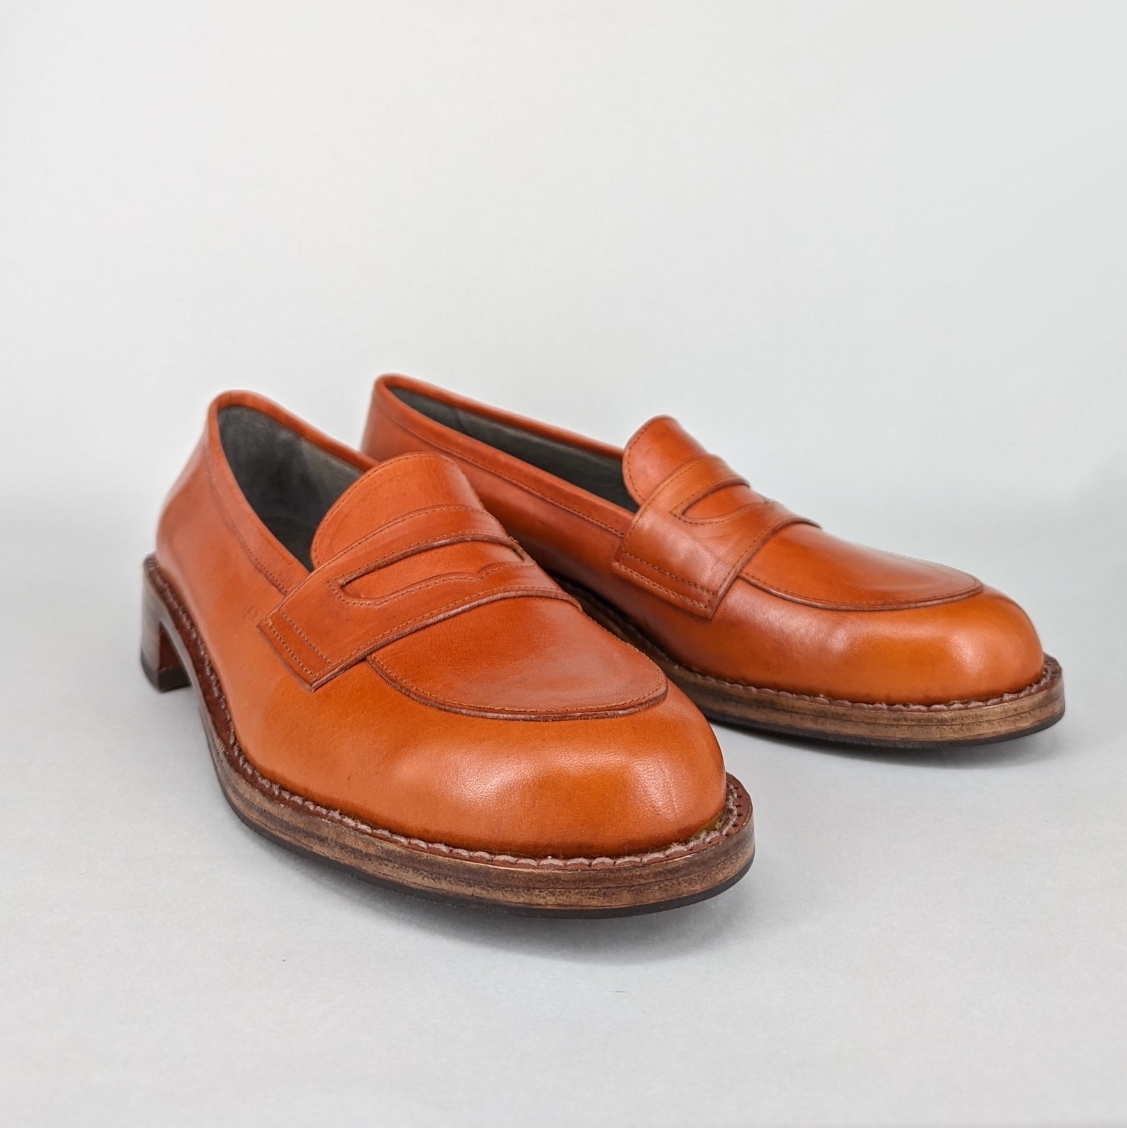 ハンドソーンウェルテッド製法 | 手作り靴教室で本格的な靴作りを体験 ...